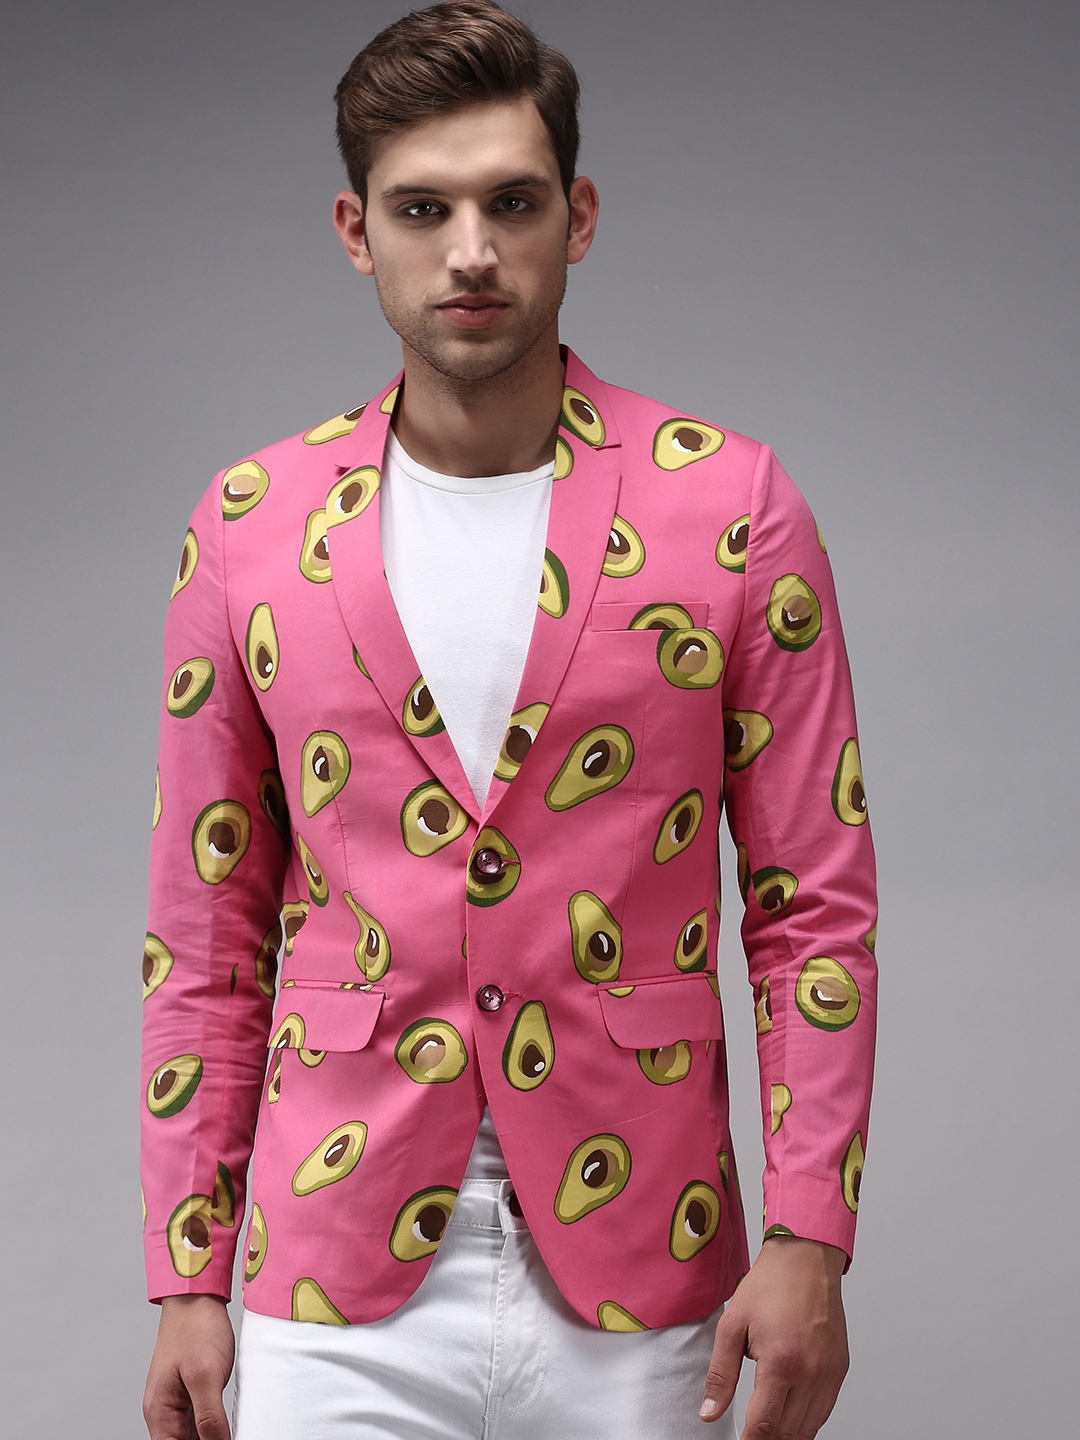 Men's Pink Polycotton Printed Blazers